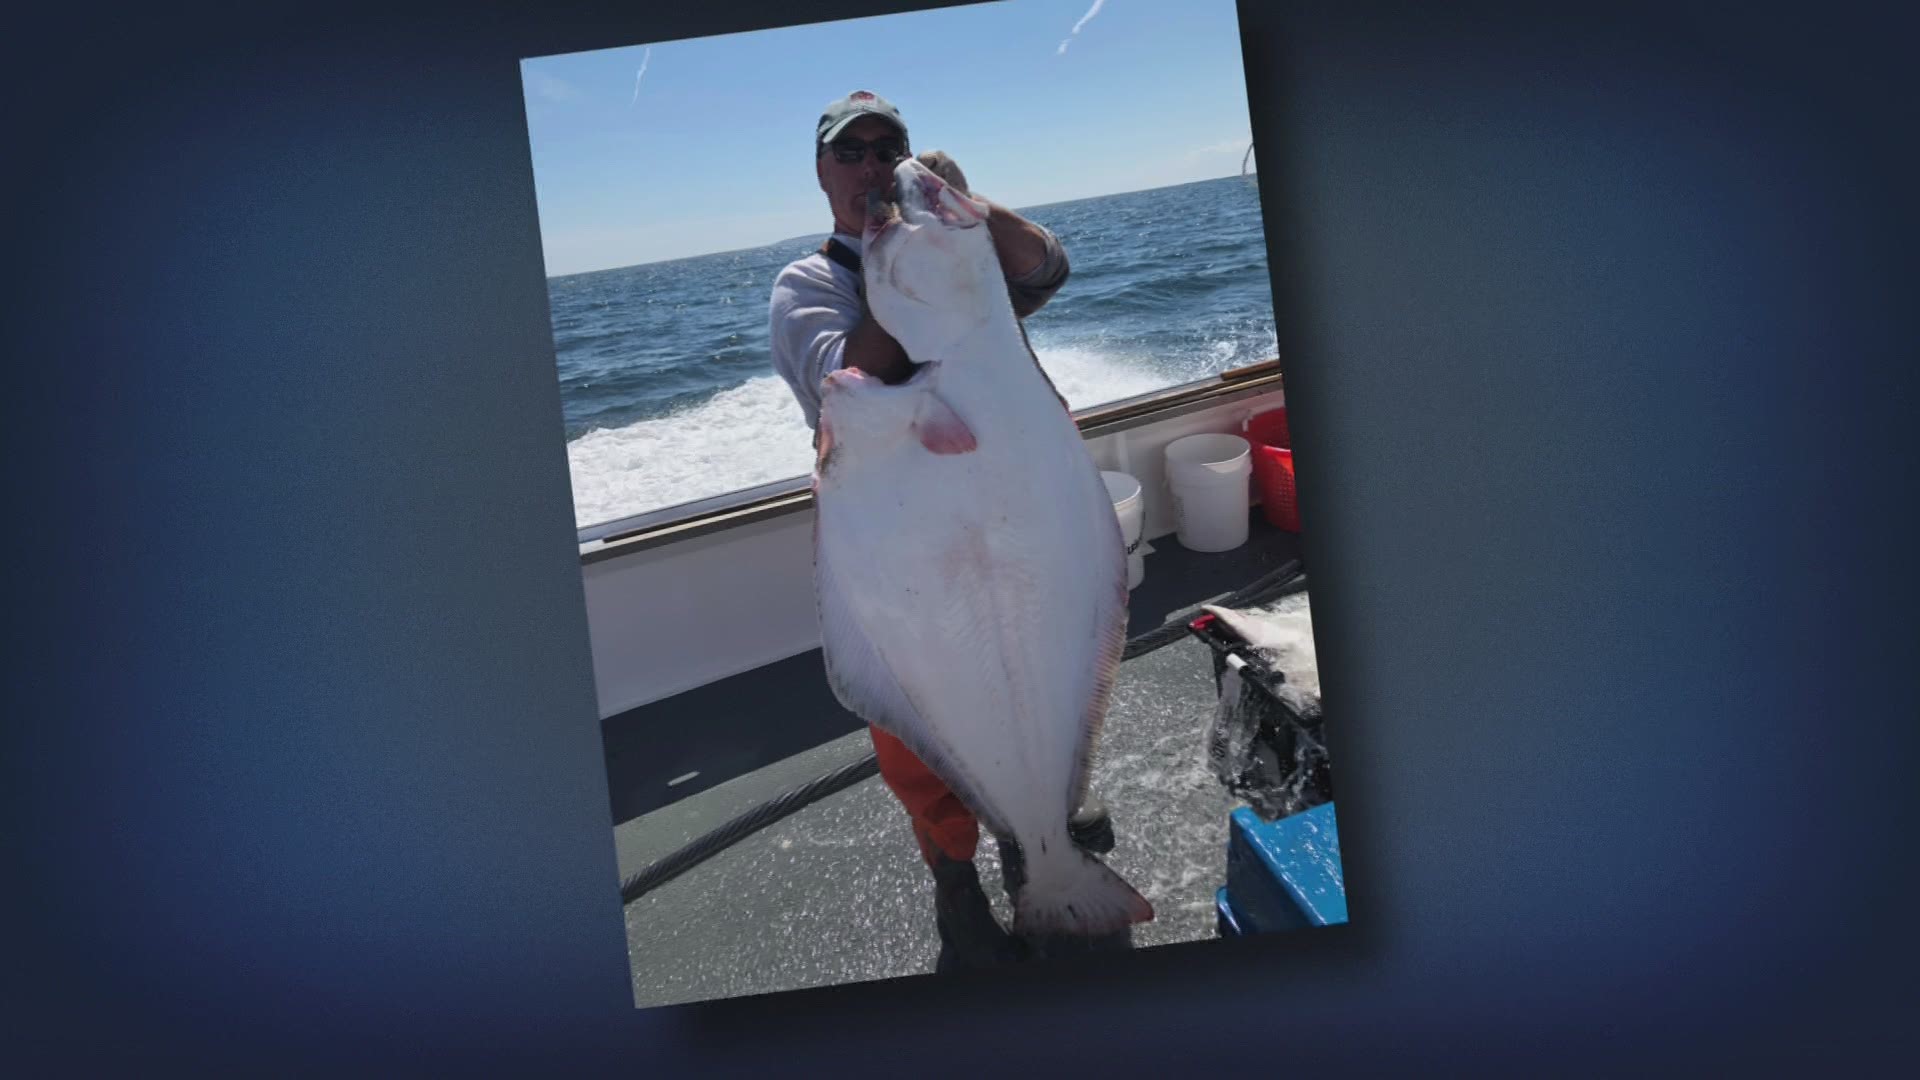 Local Maine fishermen reel in big halibut during short season